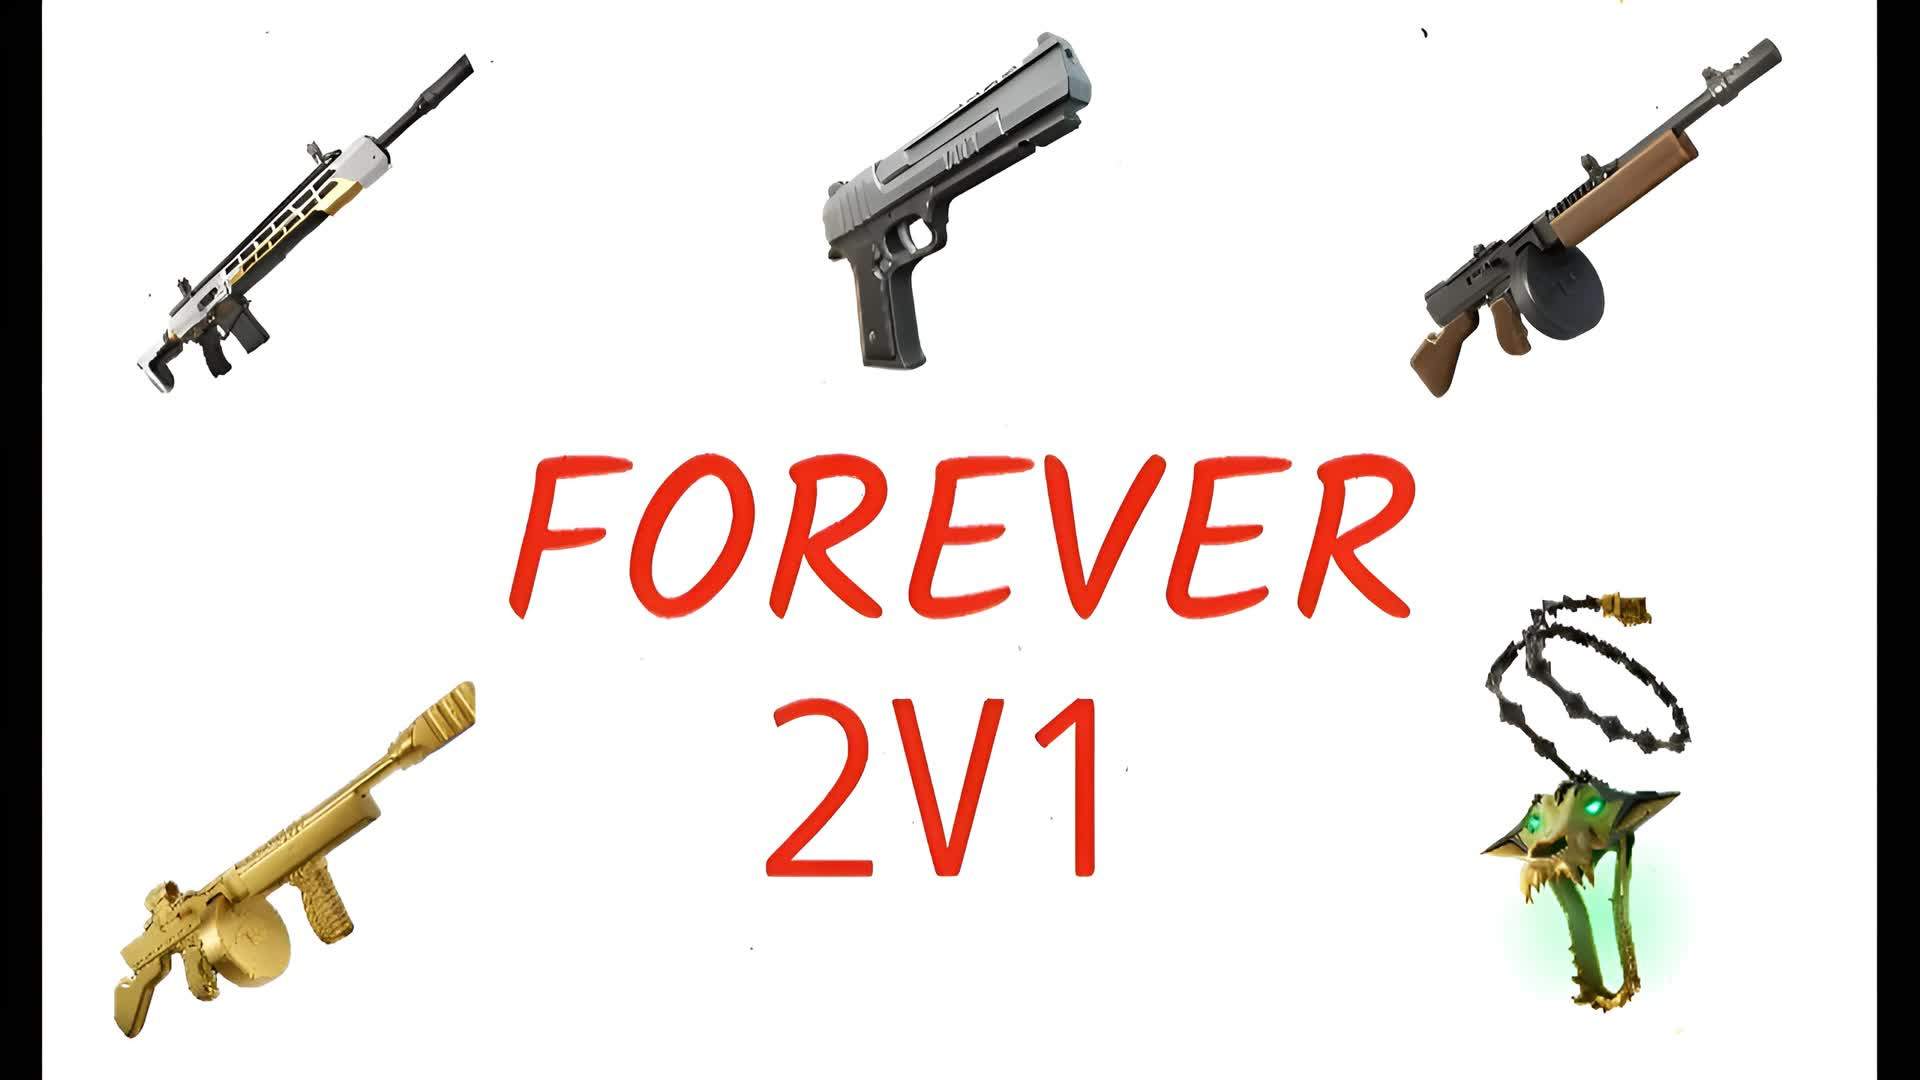 FOREVER 2V1